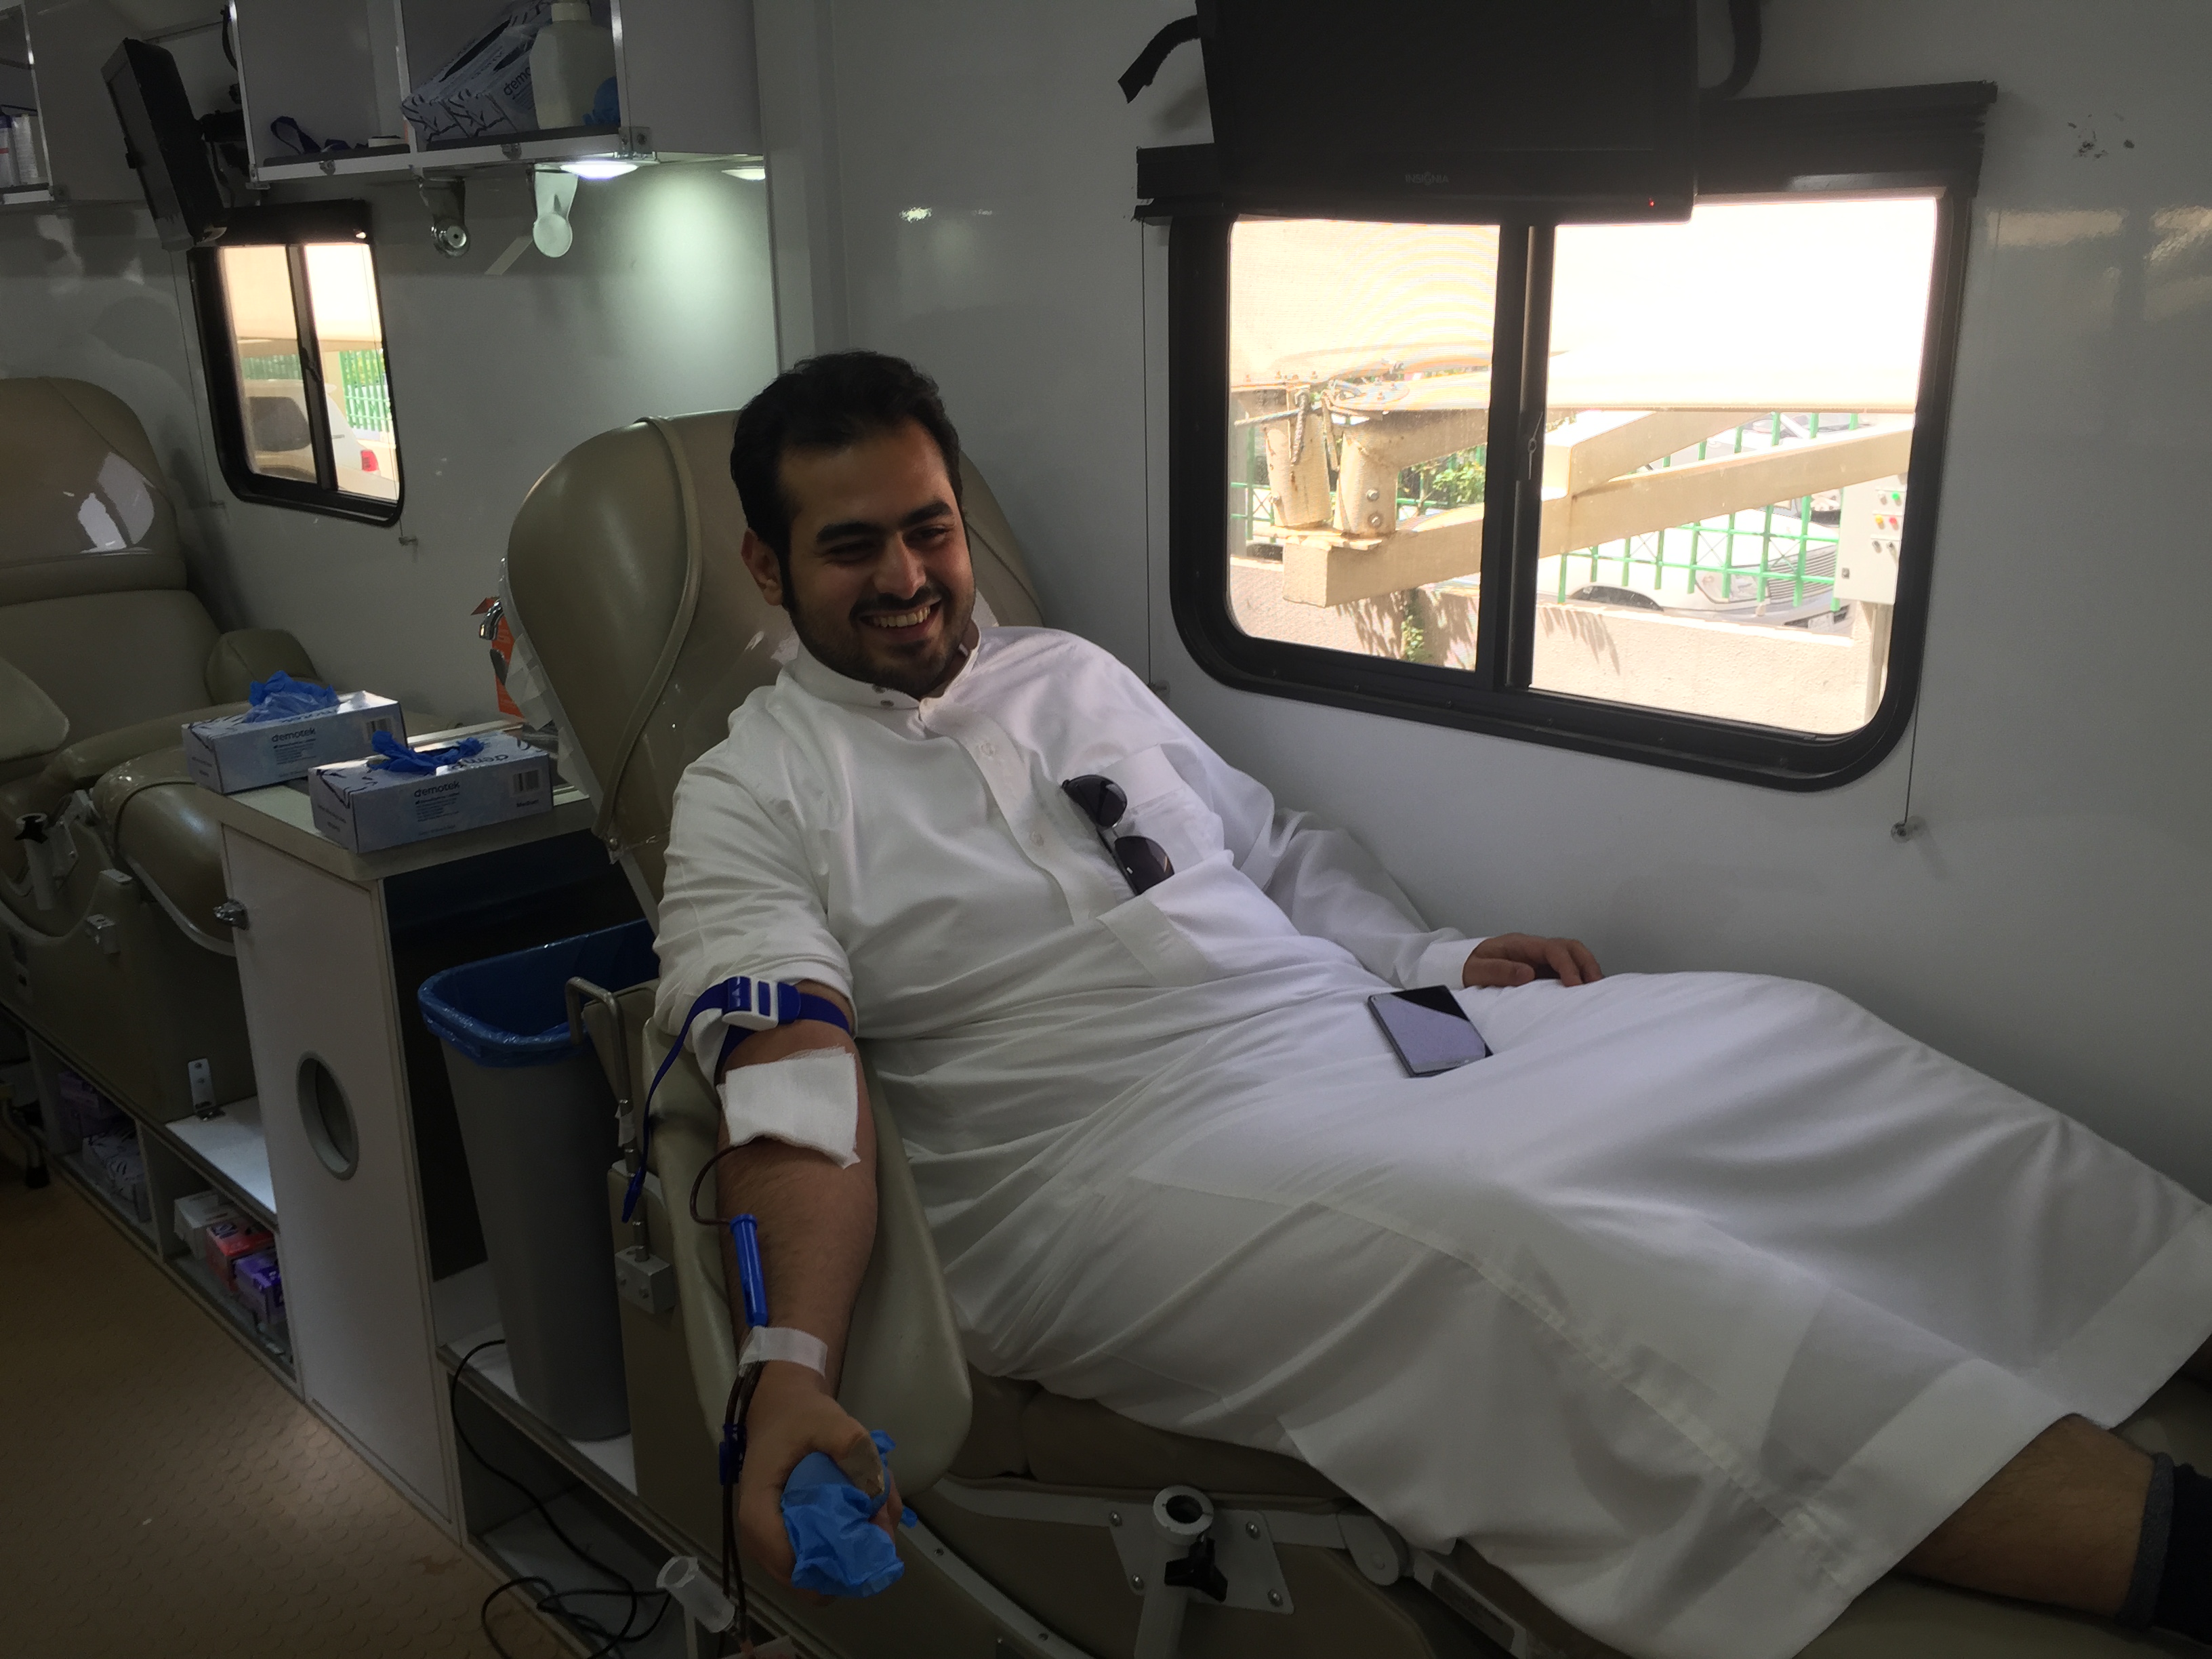 امنح حياة بقطرة من دمك تستقبل جموع المتبرعين في عمل الرياض (3)